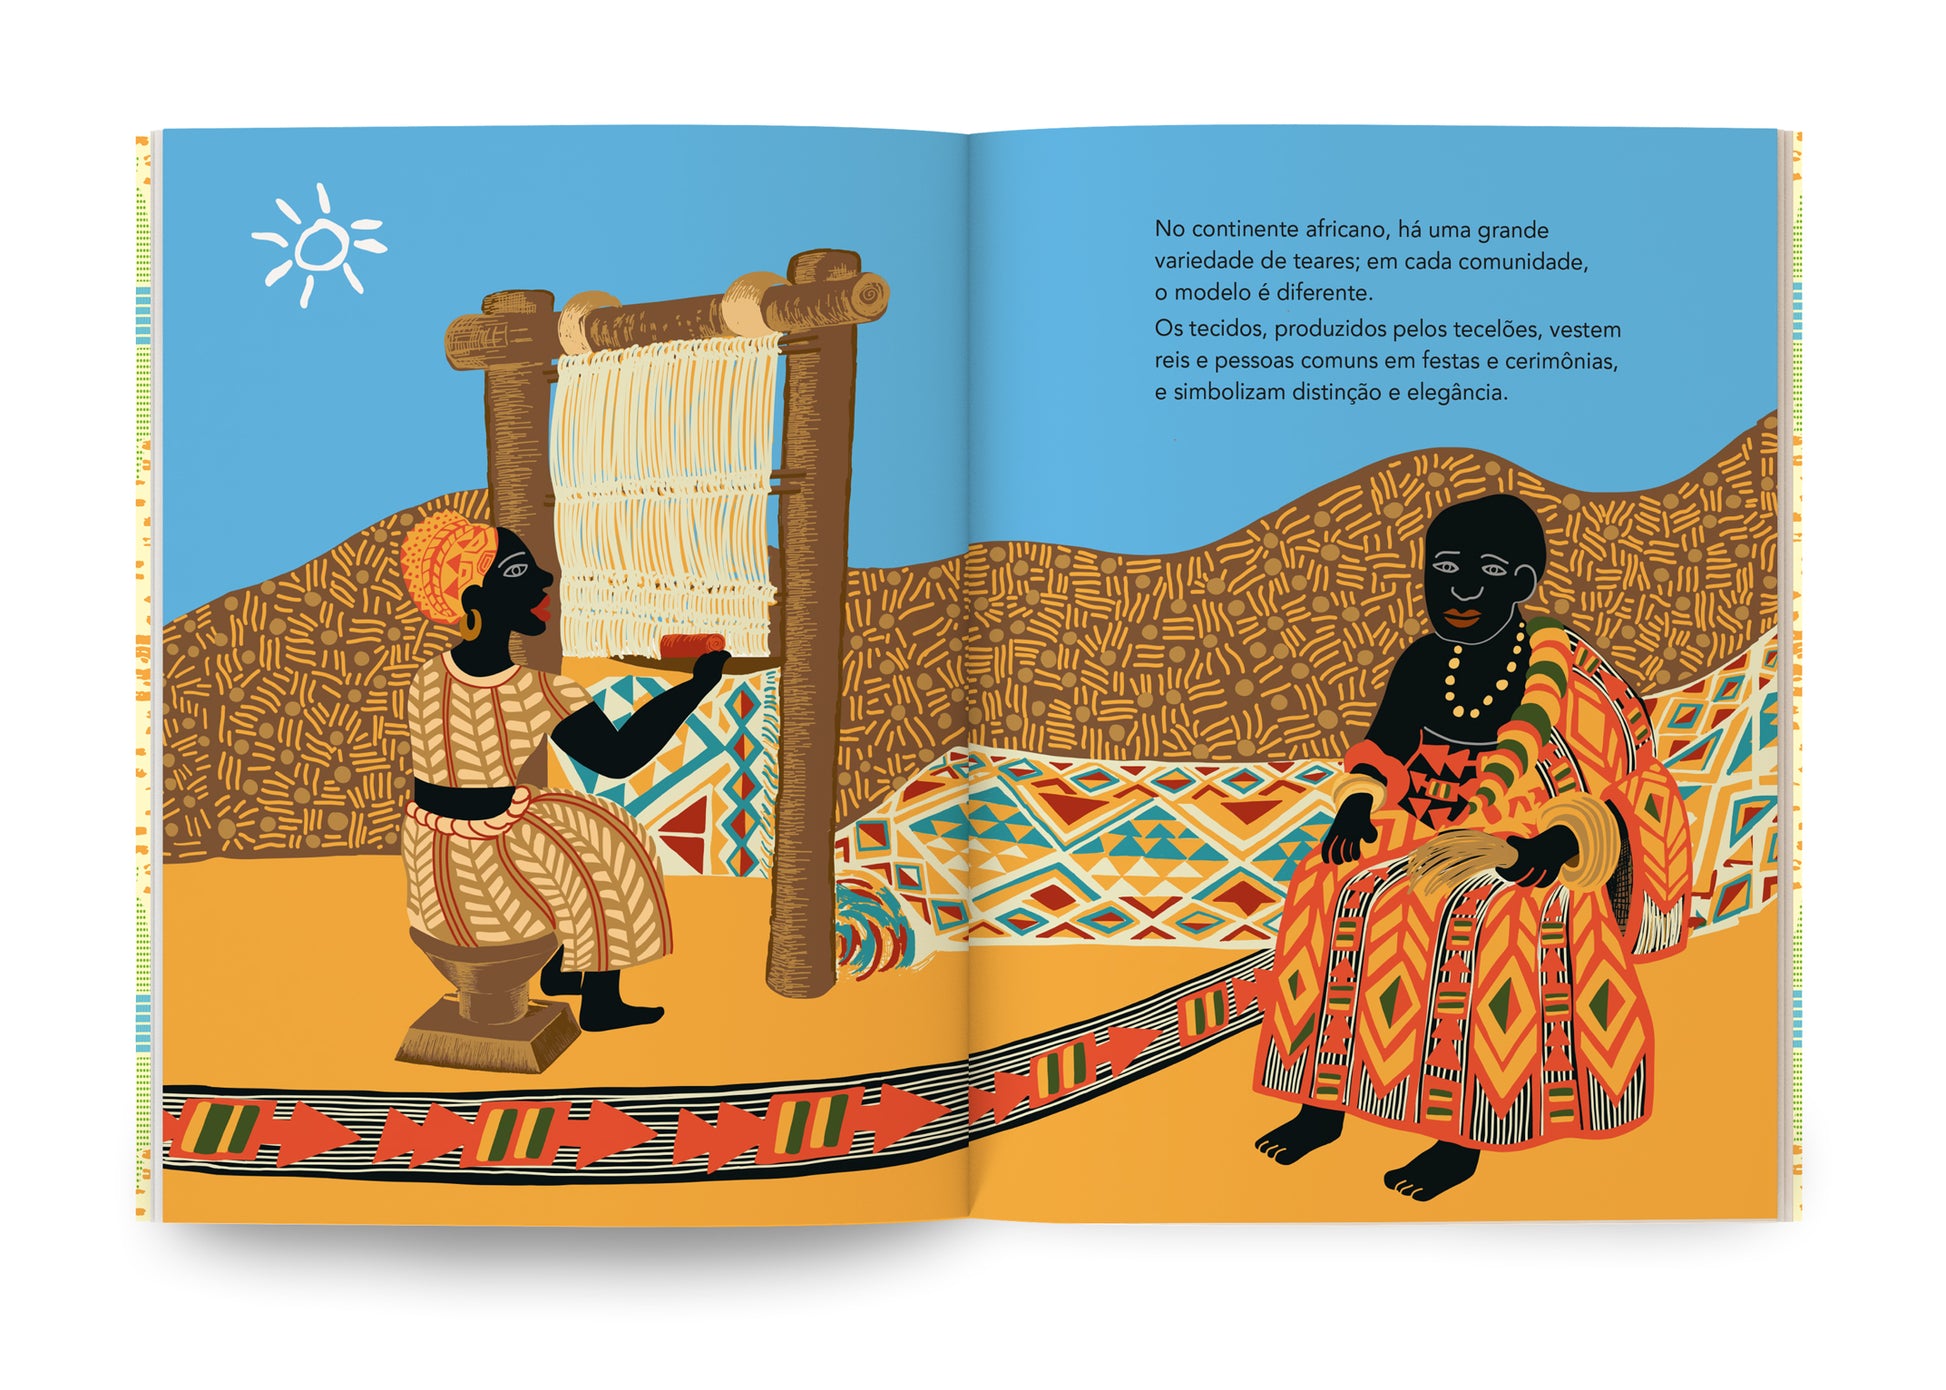 a tecelagem africana neste livro ilustrado de Goya Lopes